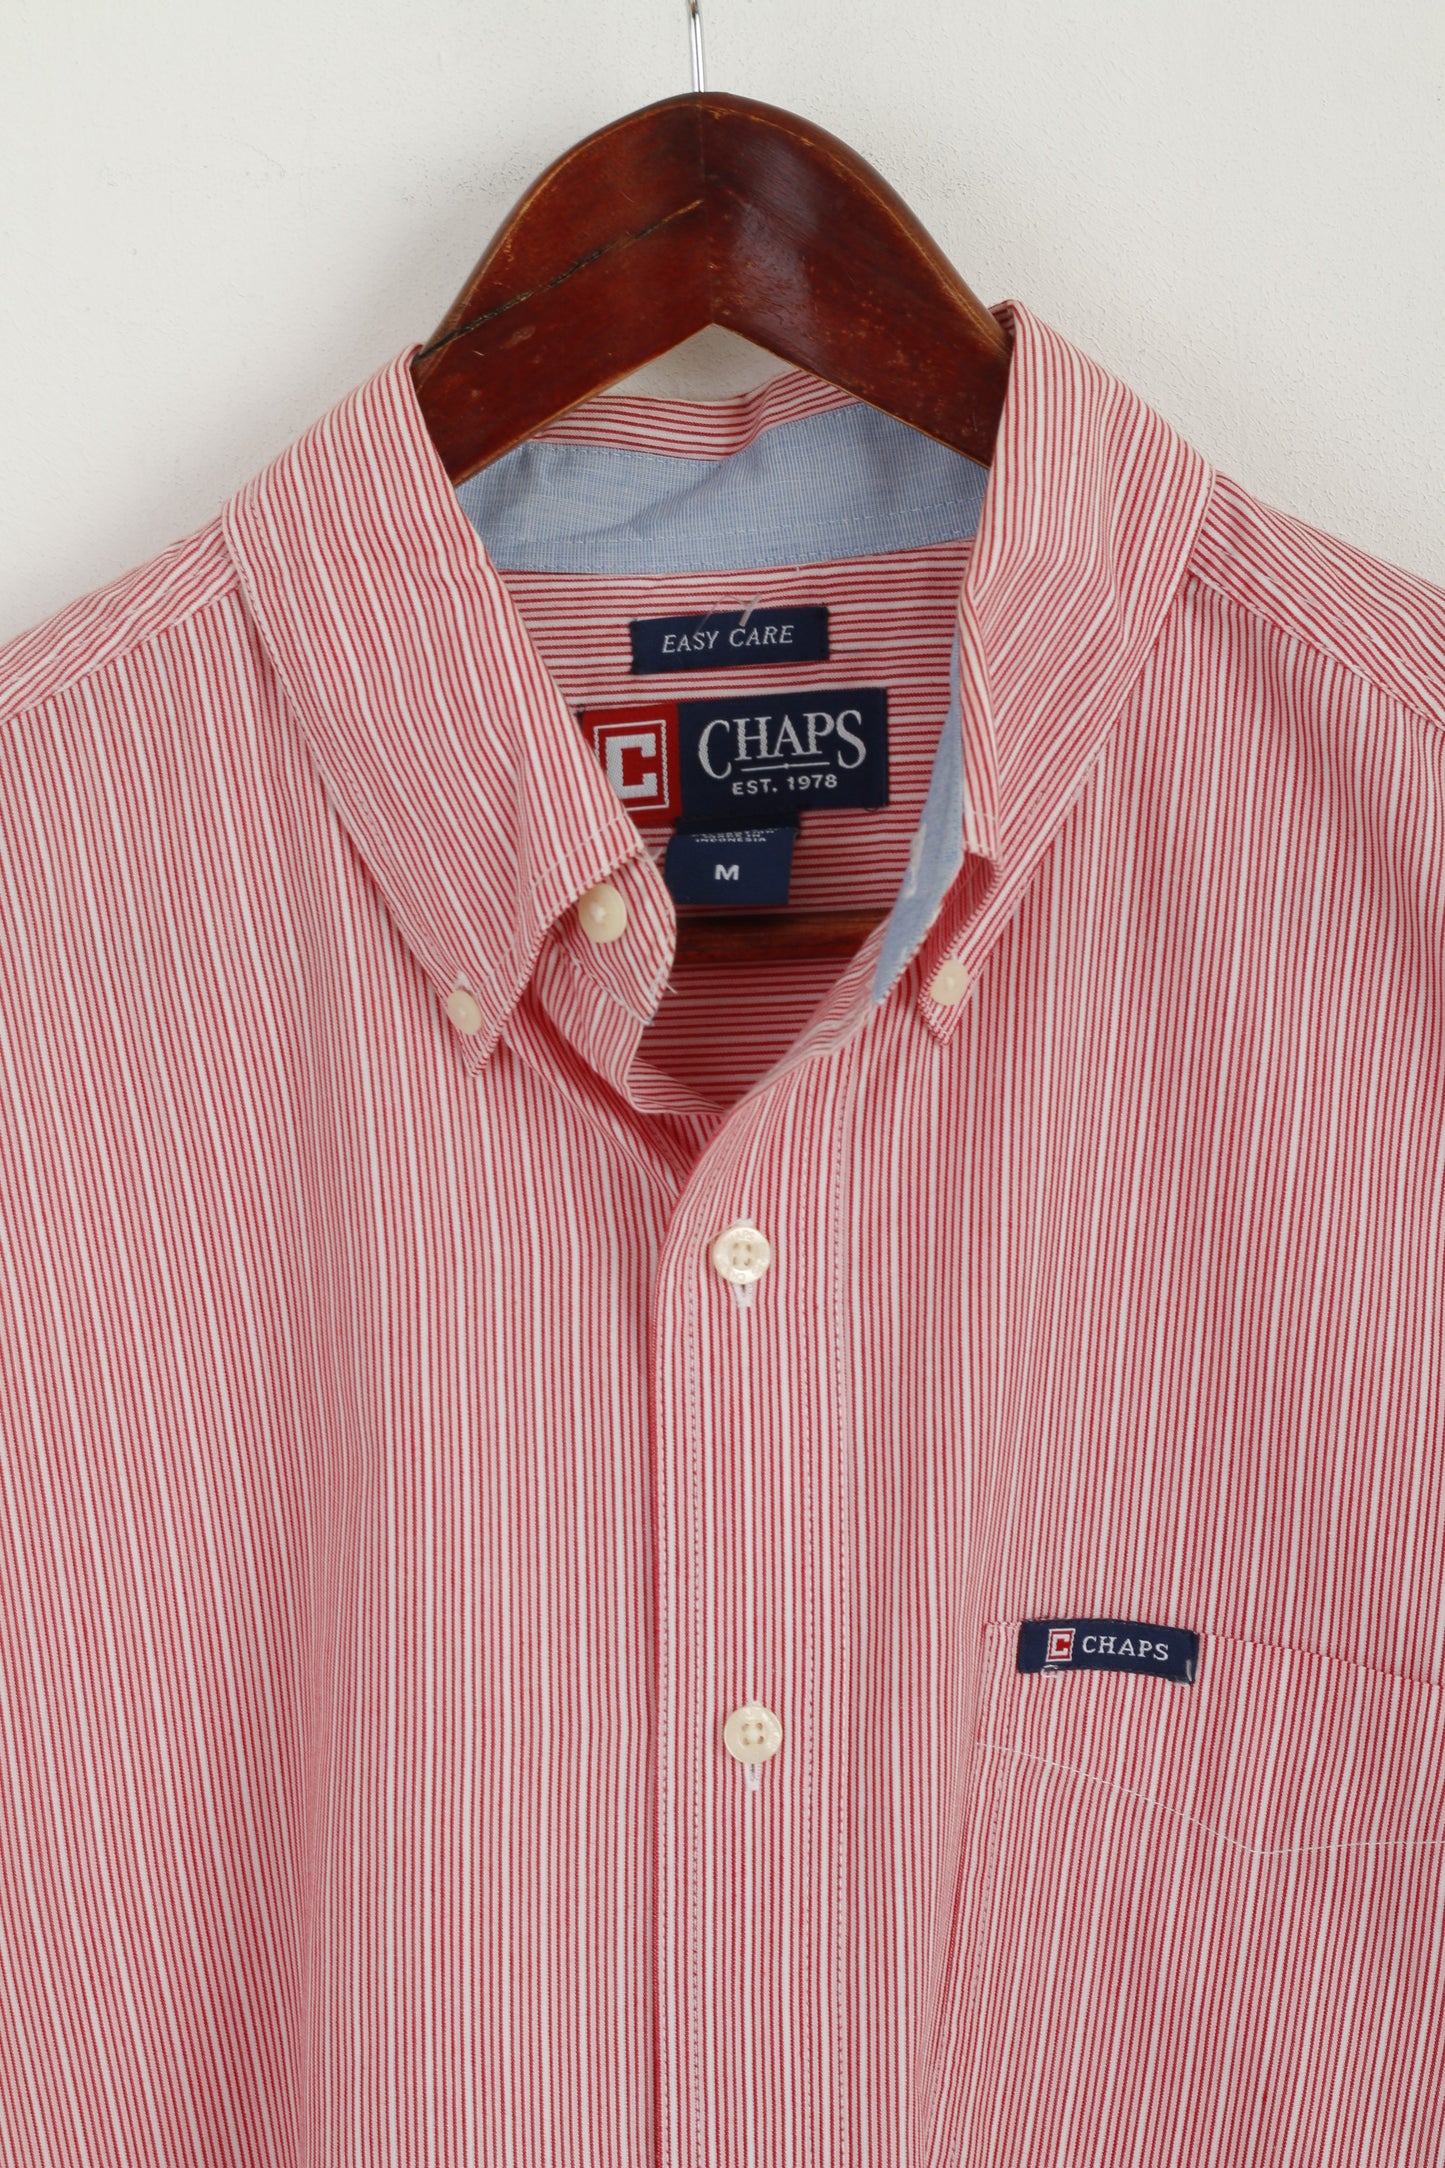 CHAPS Camicia casual da uomo M. Top classico tascabile a maniche lunghe in cotone a righe rosse